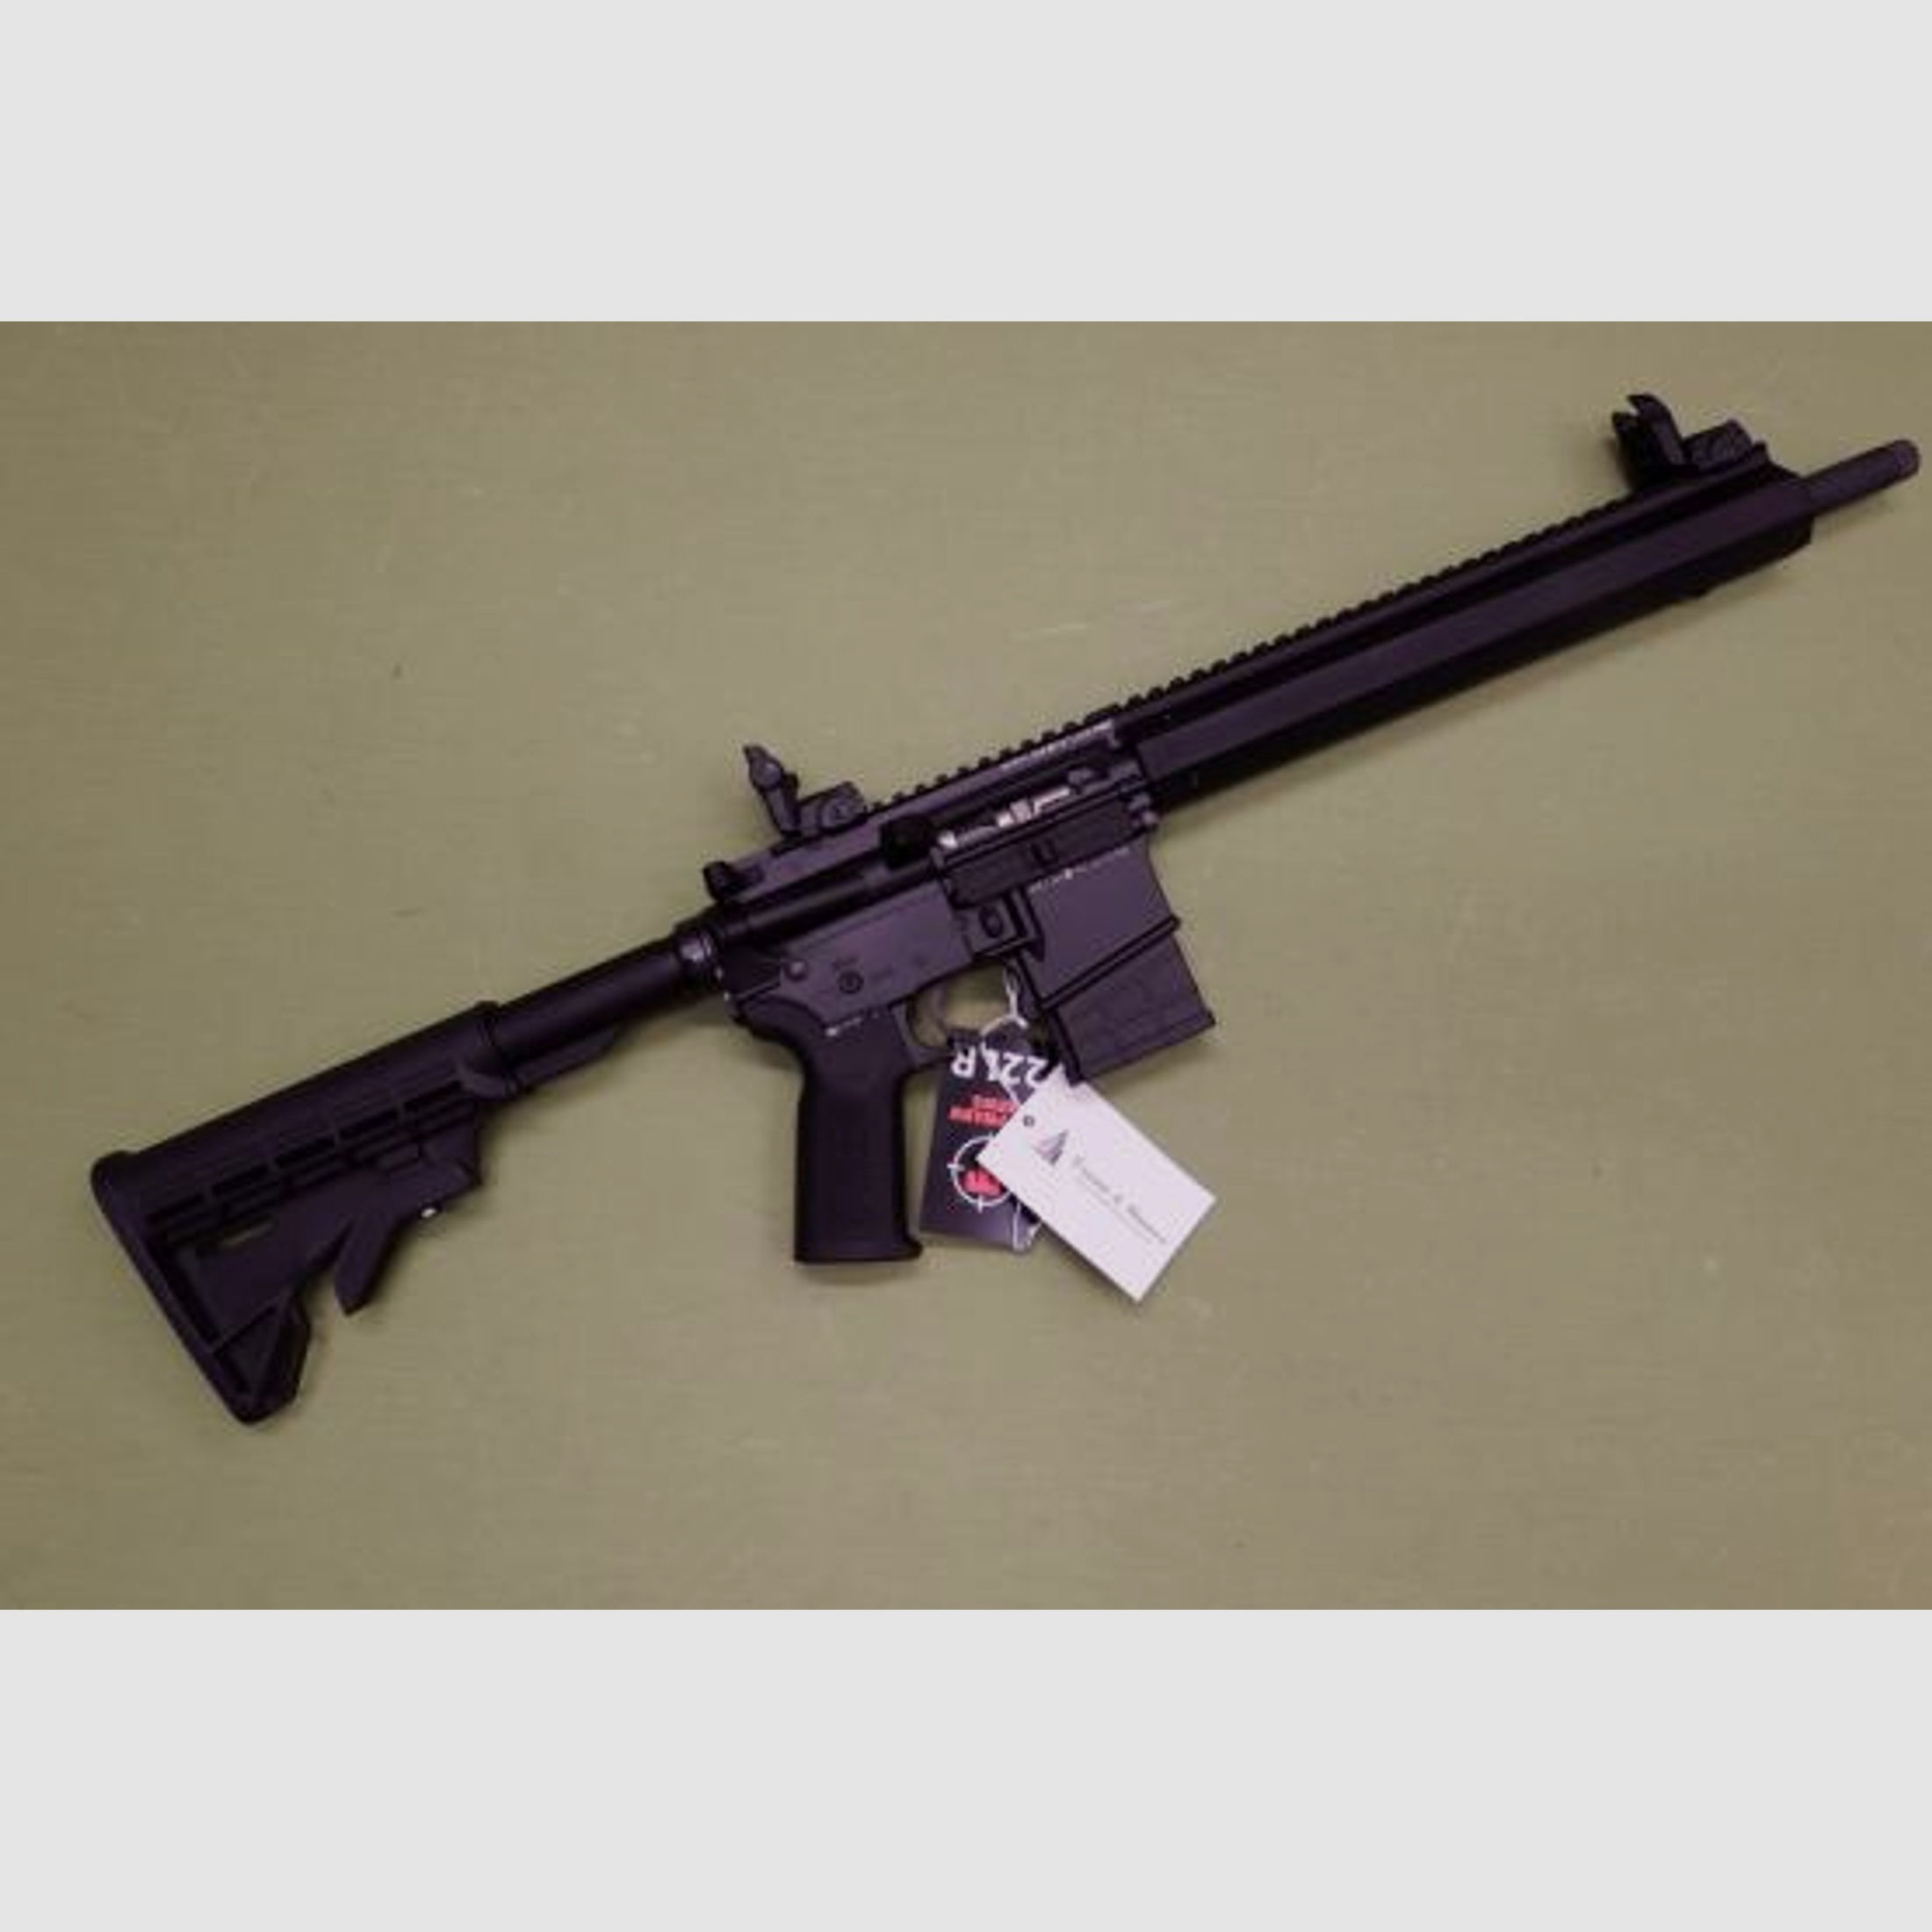 Tippmann Arms M4-22 KK - Selbstladebüchse im Kaliber .22 l.r. - Sportlich zugelassen! - AR-15